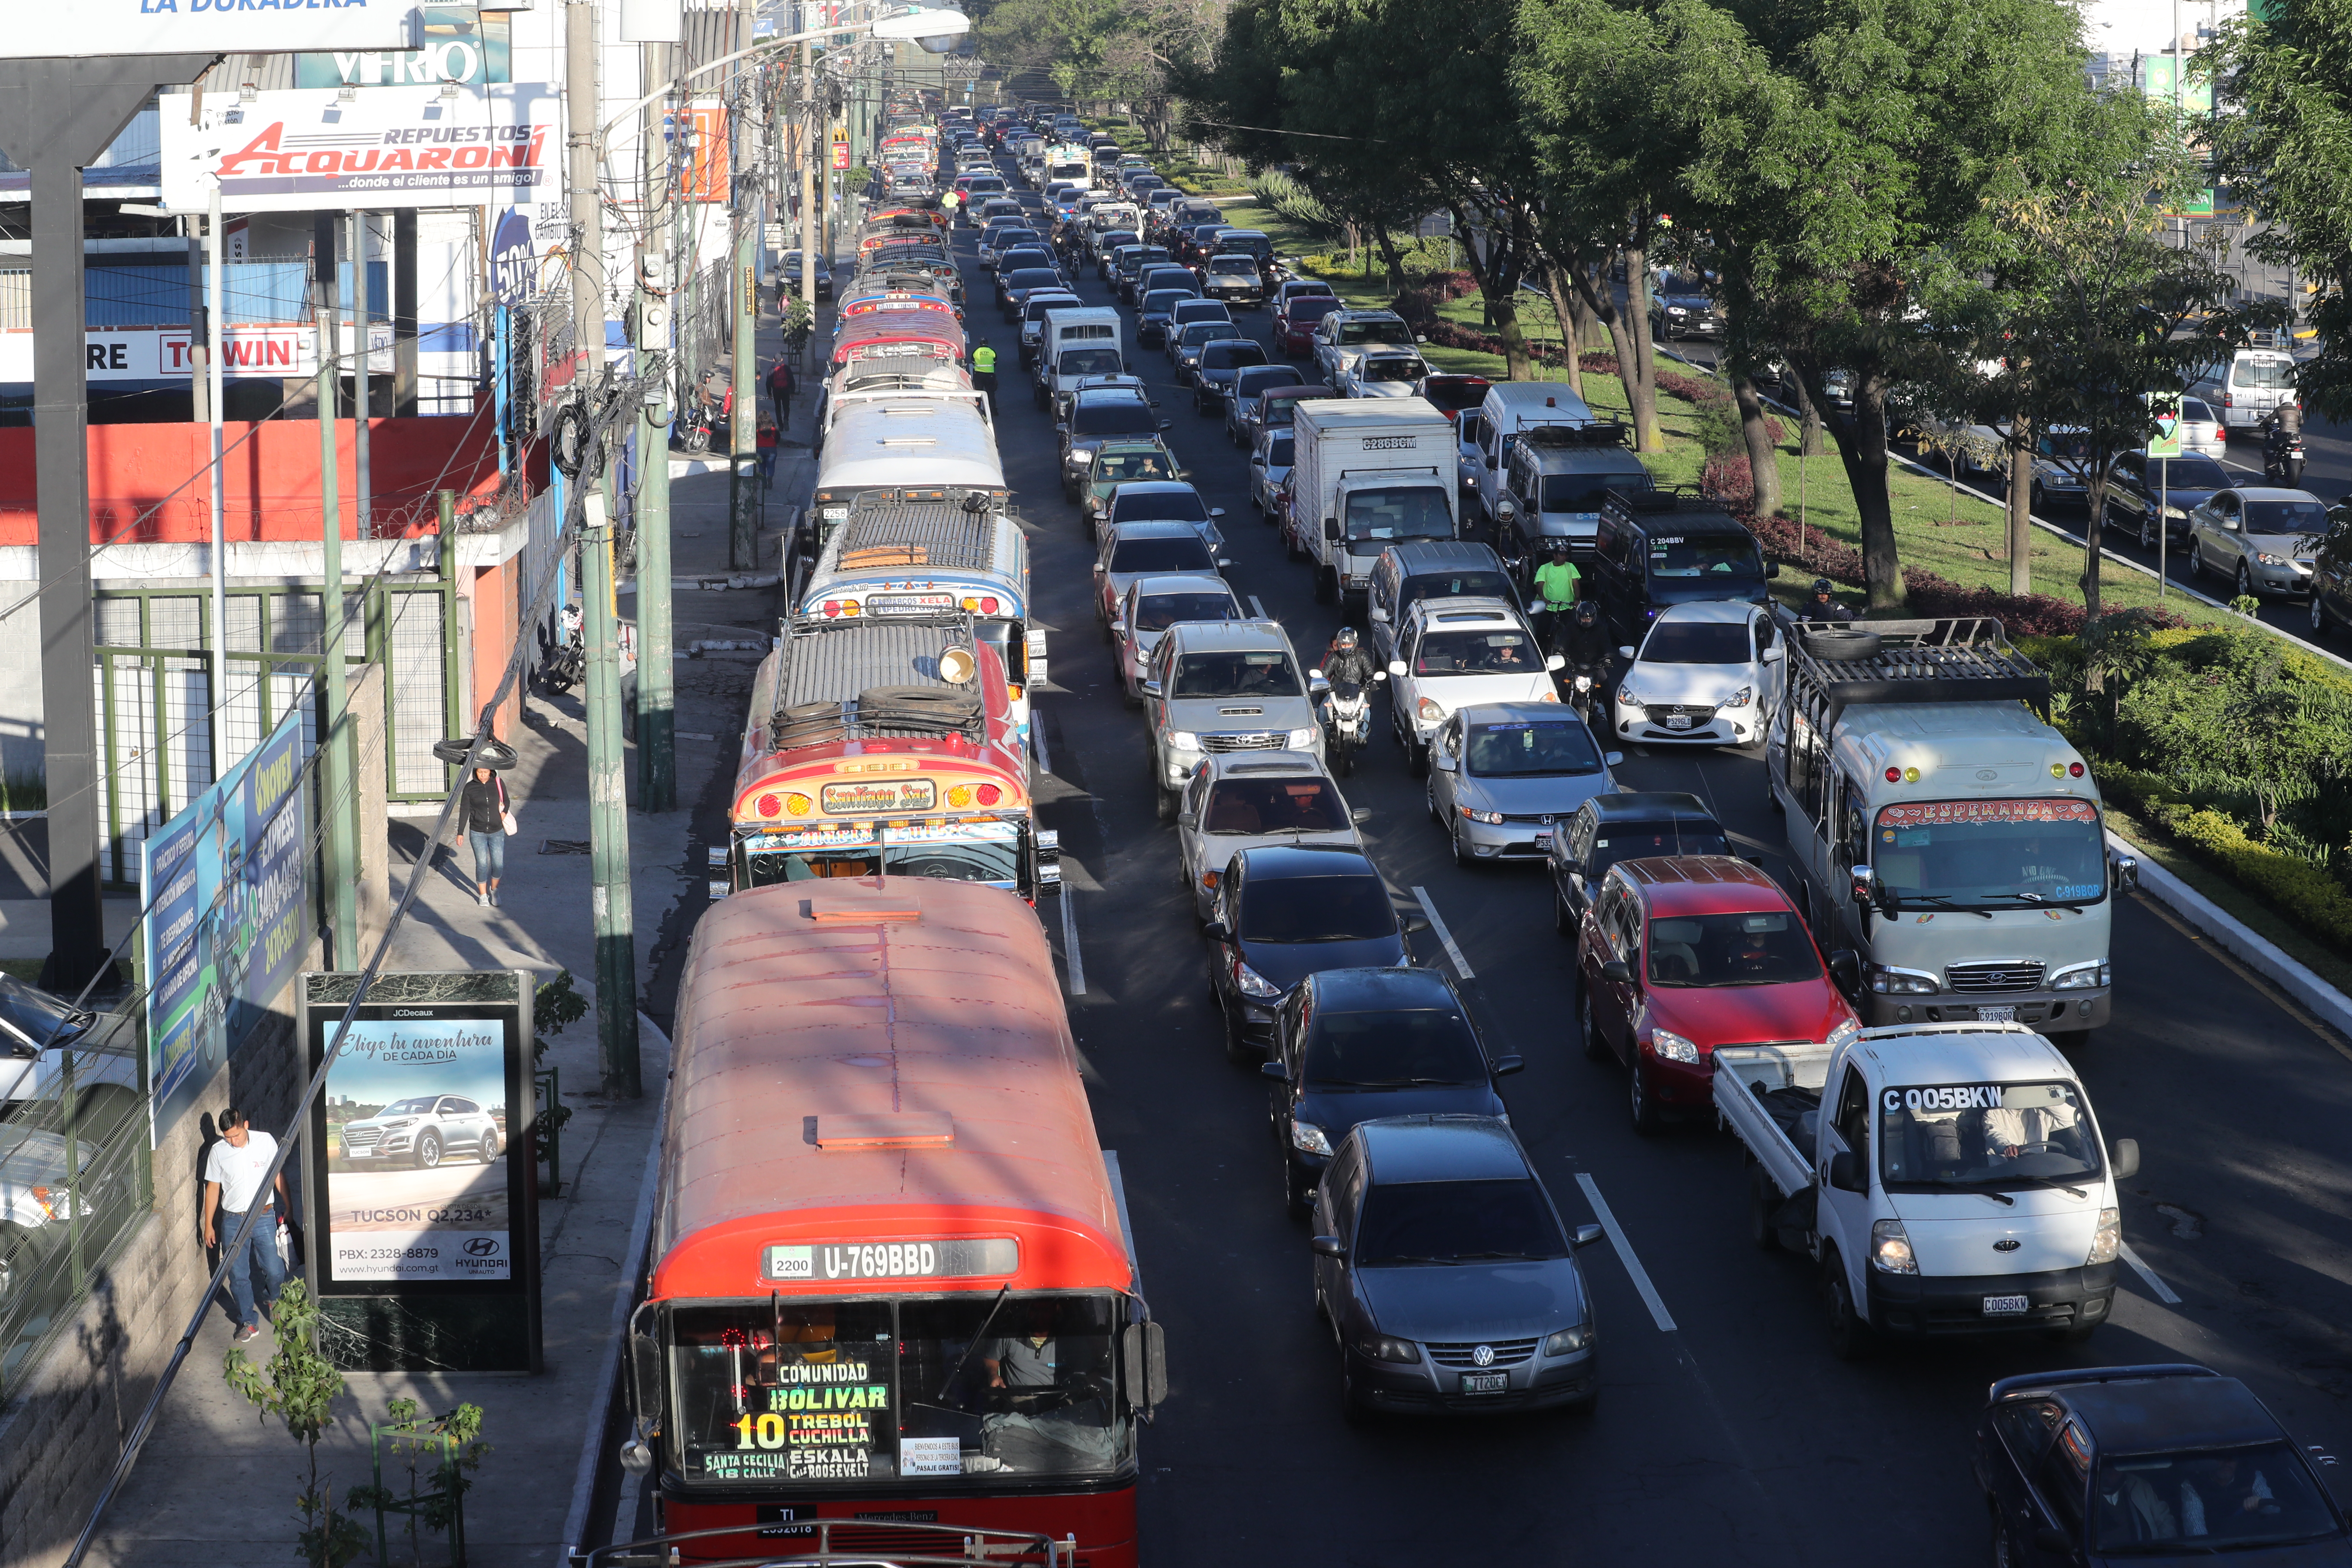 Los buses rojos de la ciudad de Guatemala y sus municipios cercanos están fuera de servicio desde marzo pasado, a consecuencia de la pandemia del covid - 19. Fotografía: Prensa Libre. 